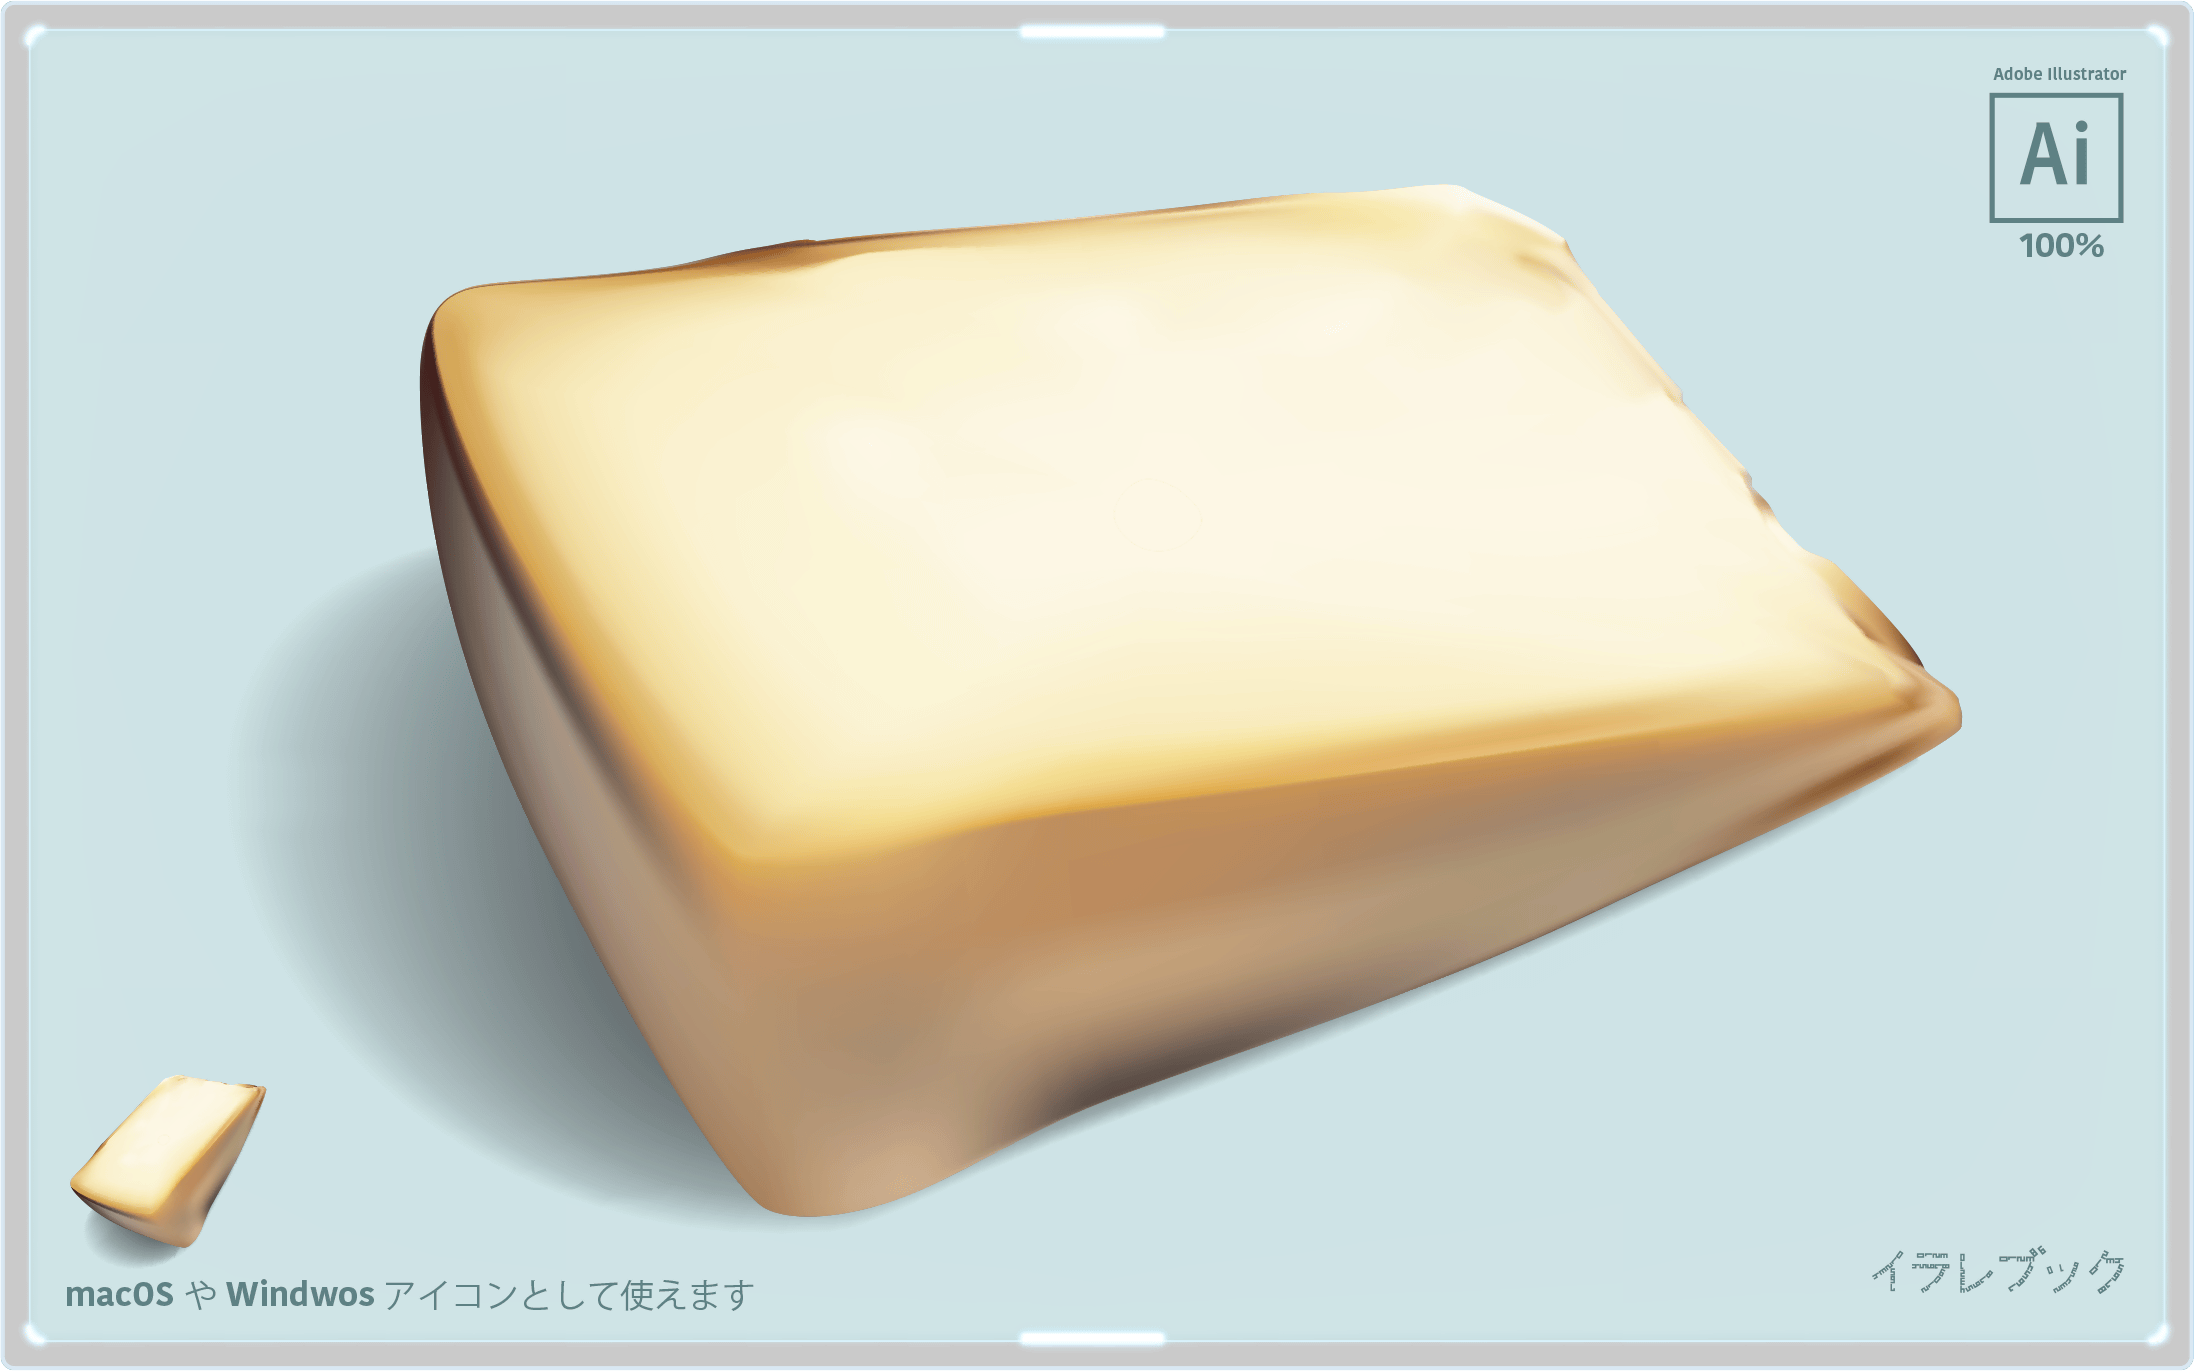 カプリーノチーズ イラスト 別名シェーブルチーズ 焼くと美味しい 山羊と牛のチーズを比較 Food